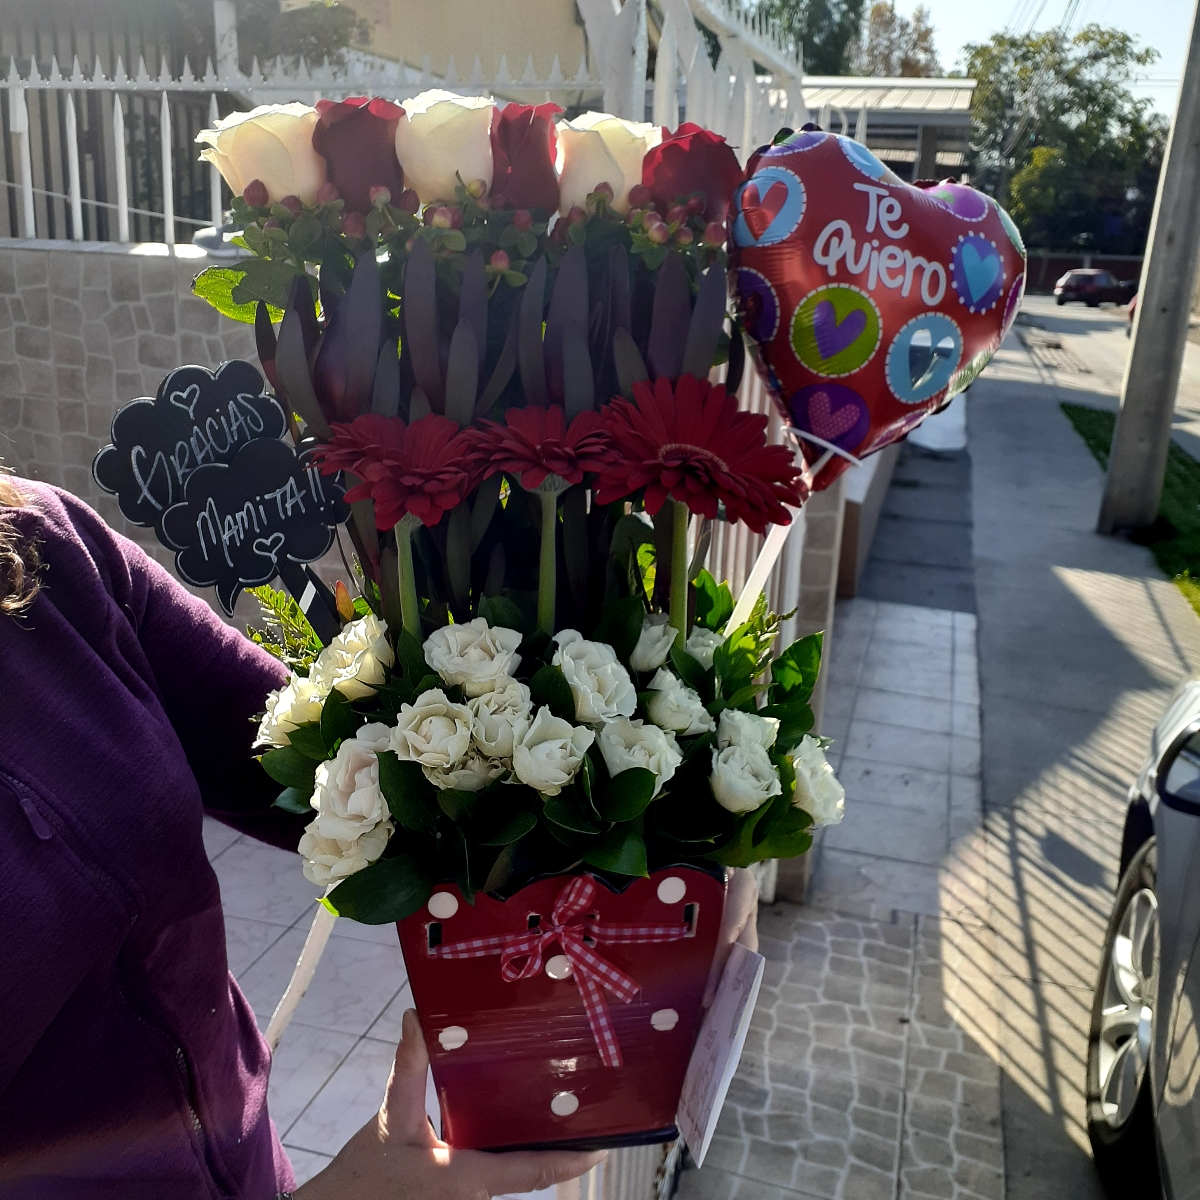 Amor de madre Rojo - Arreglo floral para mamá con mix de rosas blanco-rojo, hypericum, leucadendros, gerberas rojas y minirosas blancas - Pedido 254426